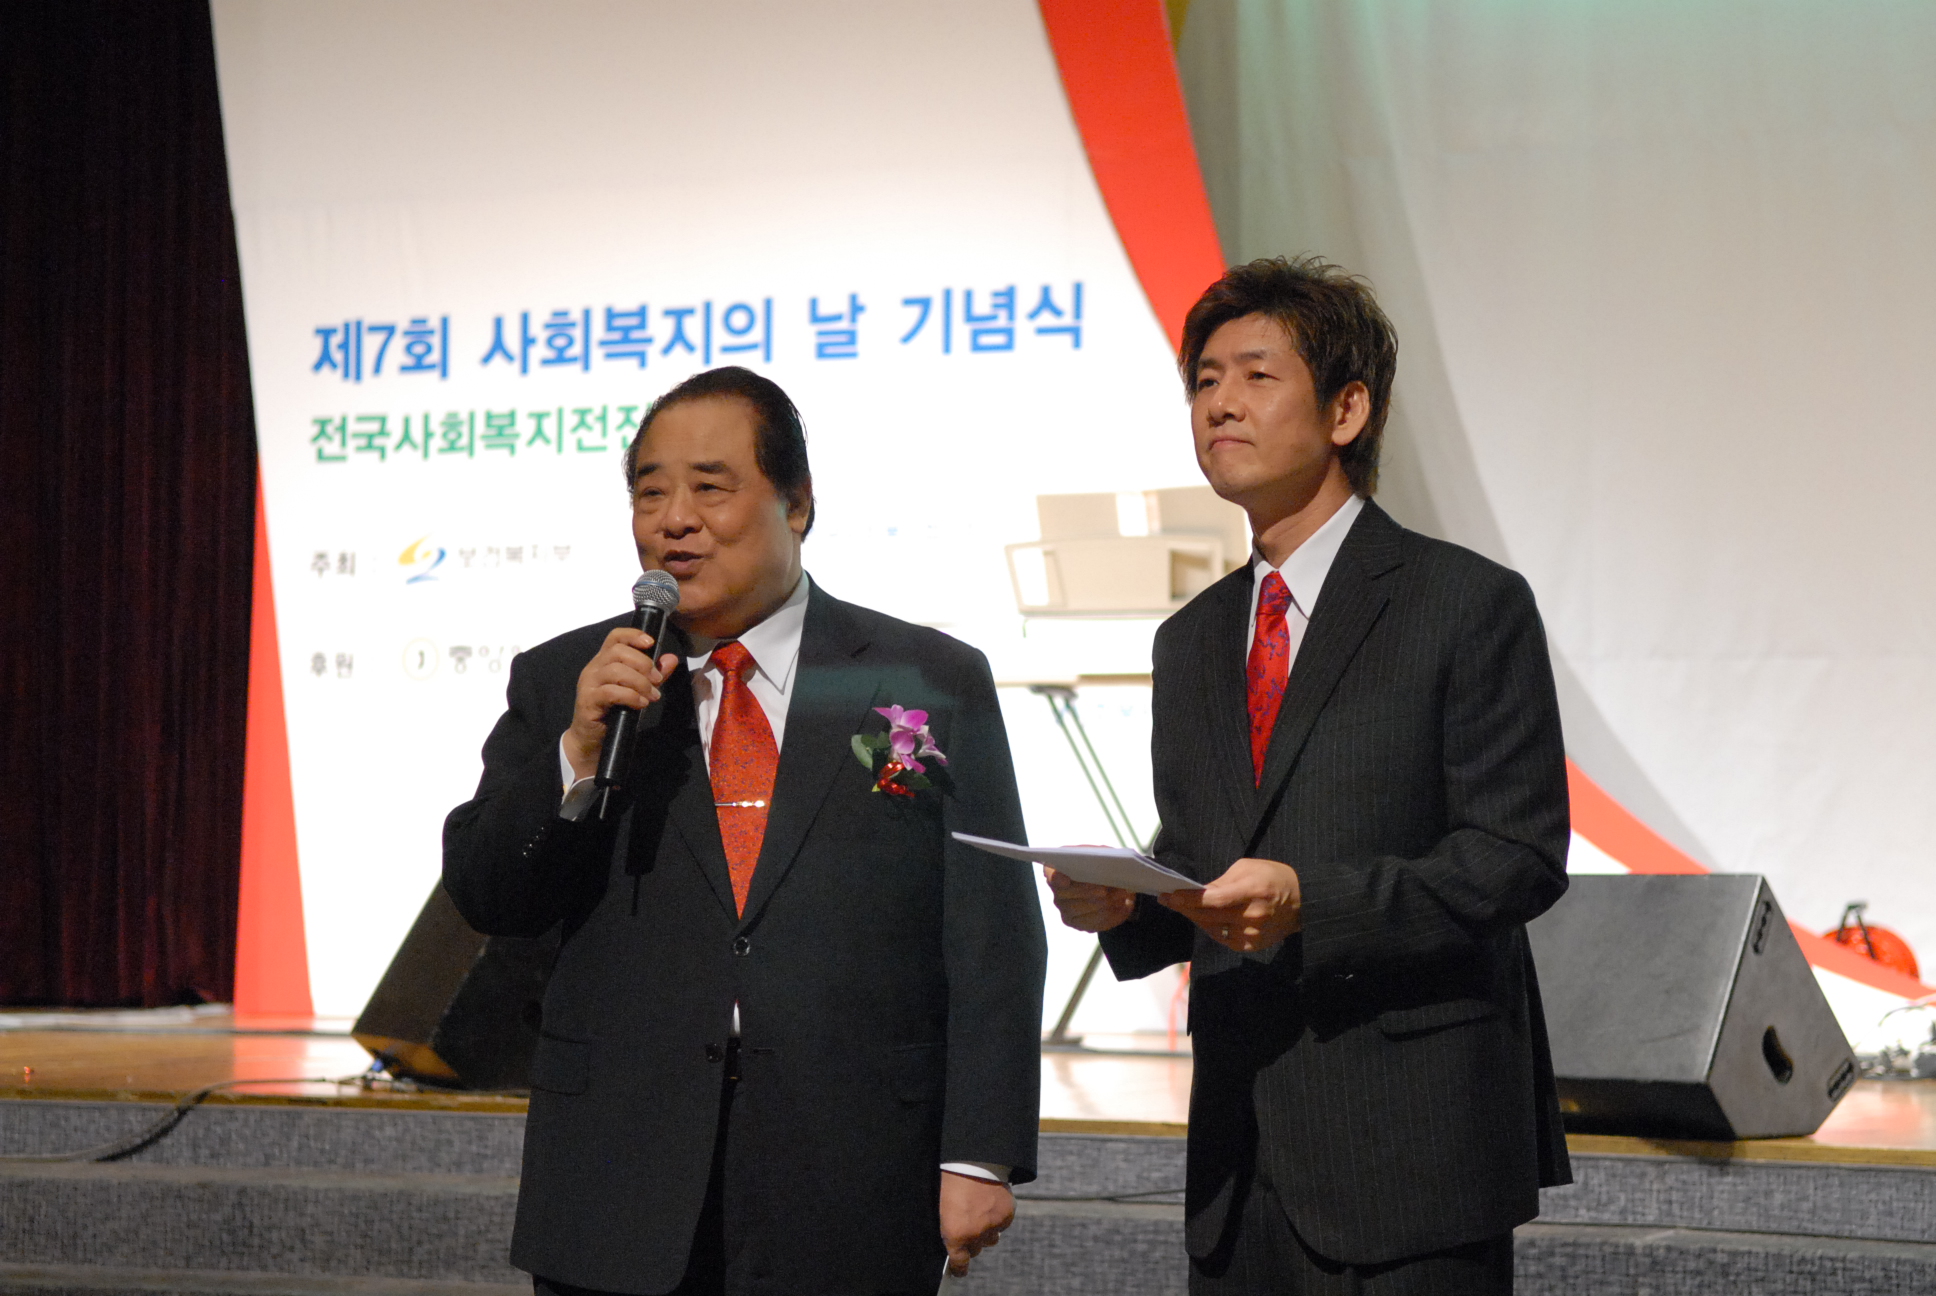 KBS 제3라디오 공개방송 중 방송인 정재환 씨와 인터뷰를 하고 있는 김득린 한국사회복지협의회장.